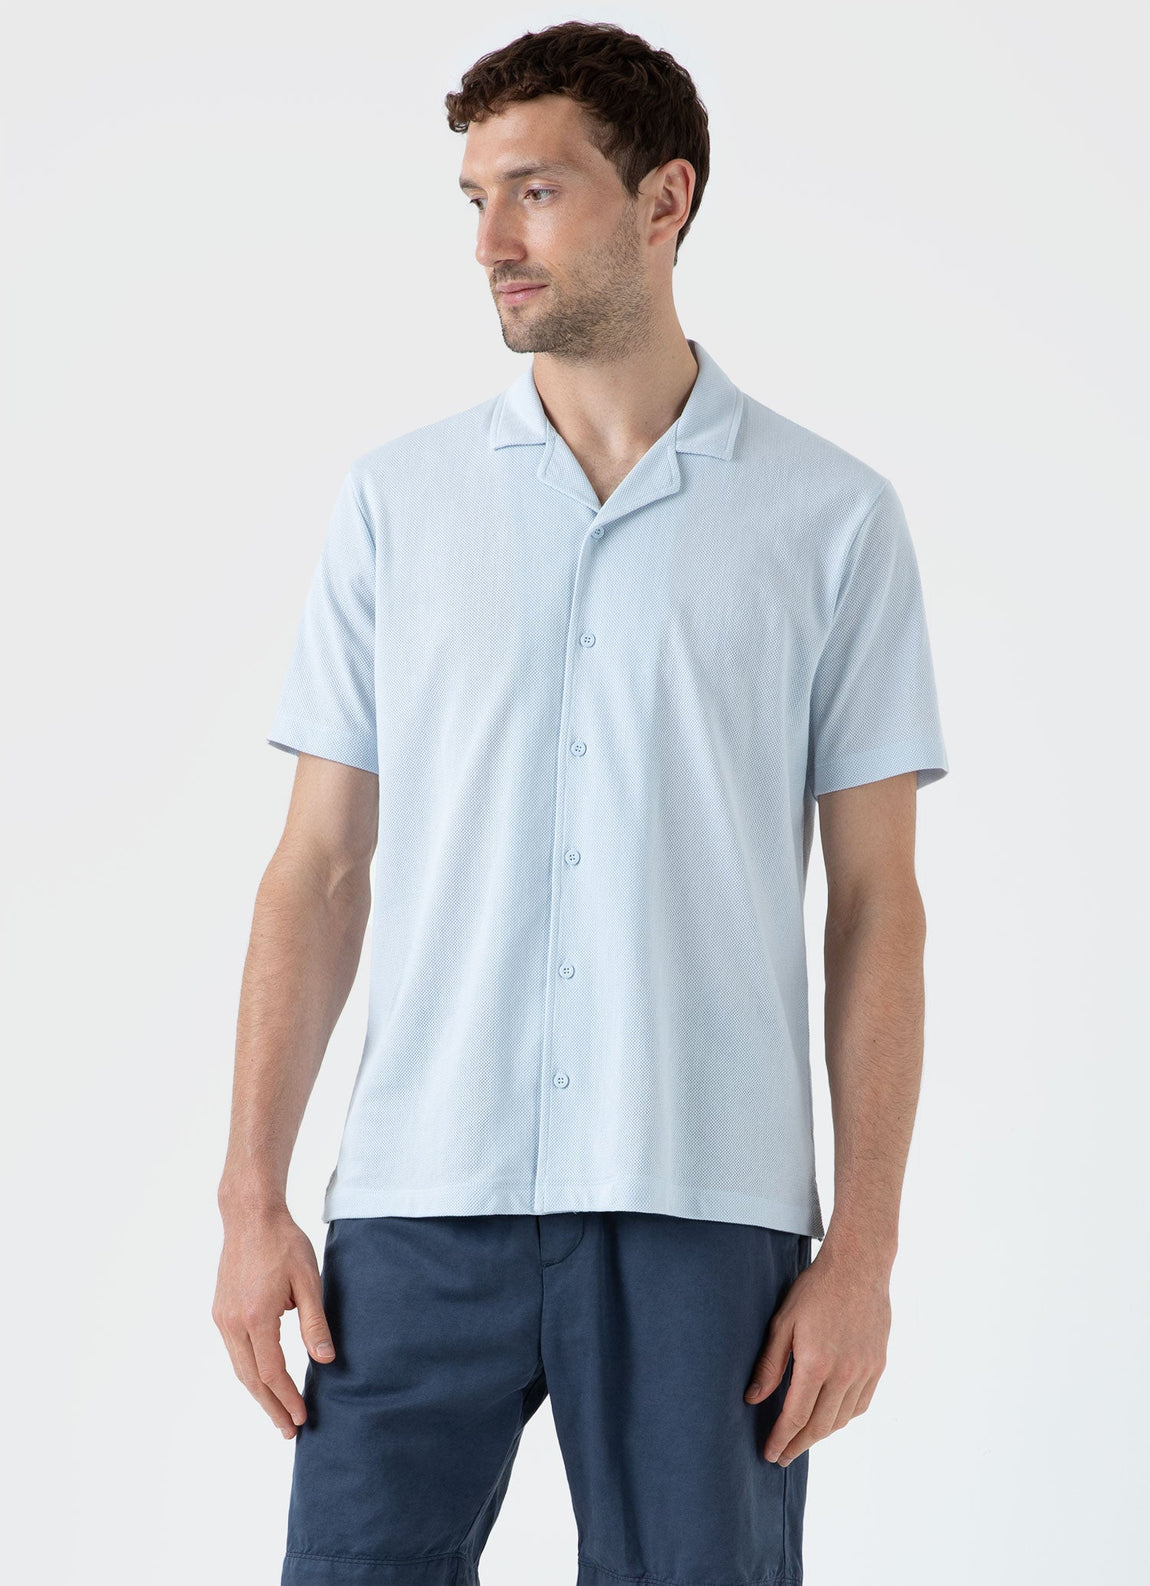 Men's Riviera Camp Collar Shirt in Light Blue | Sunspel